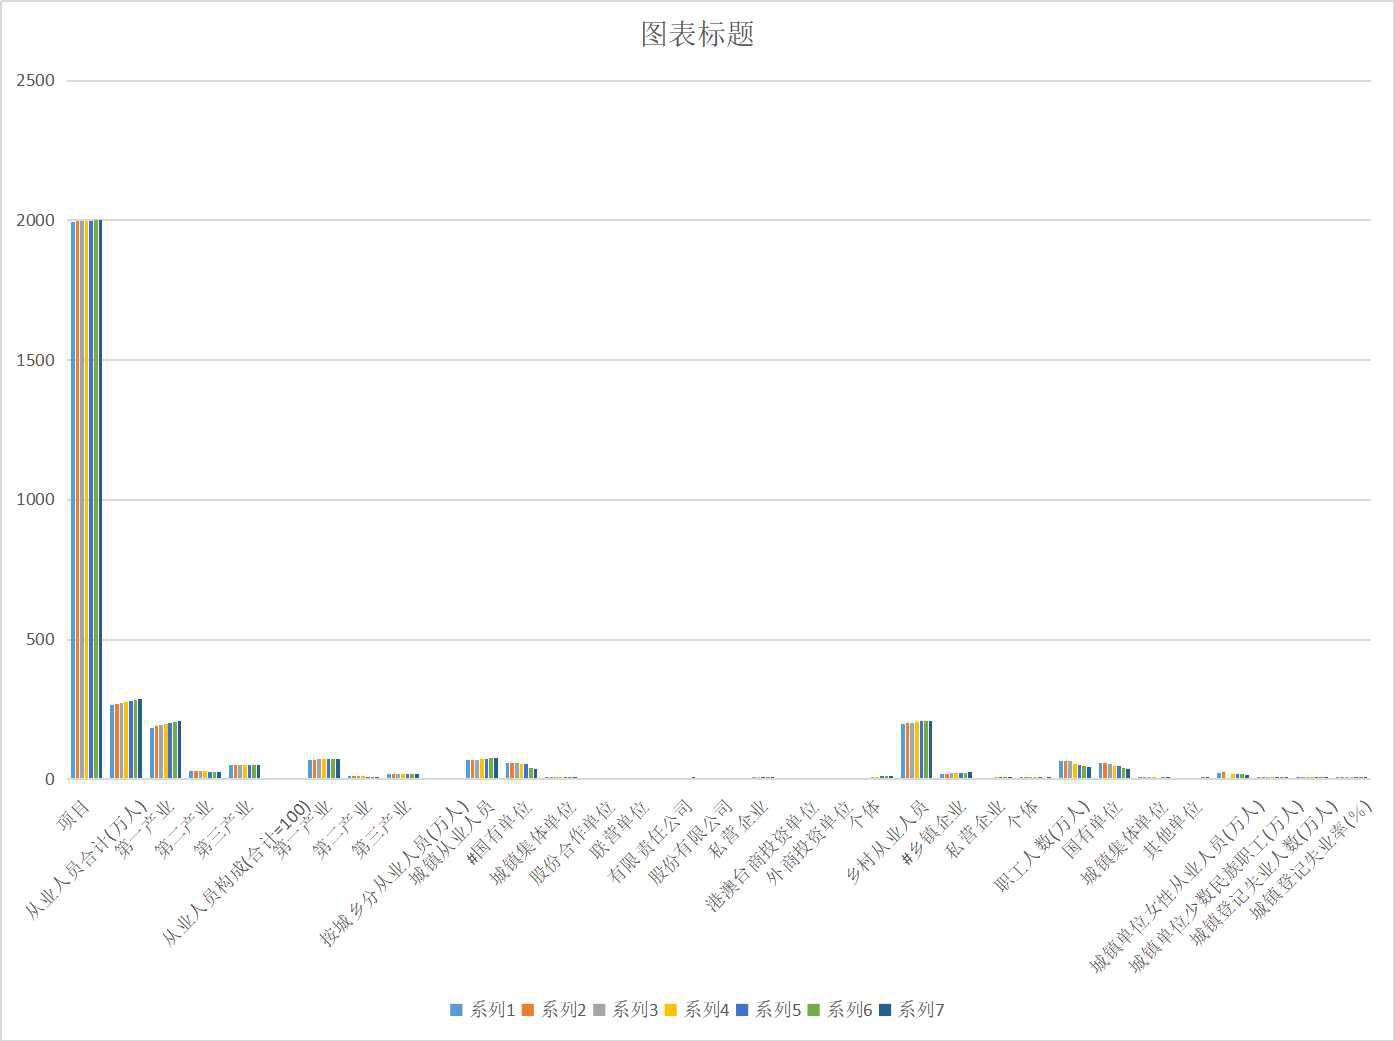 青海省就业基本情况（1985-2019）